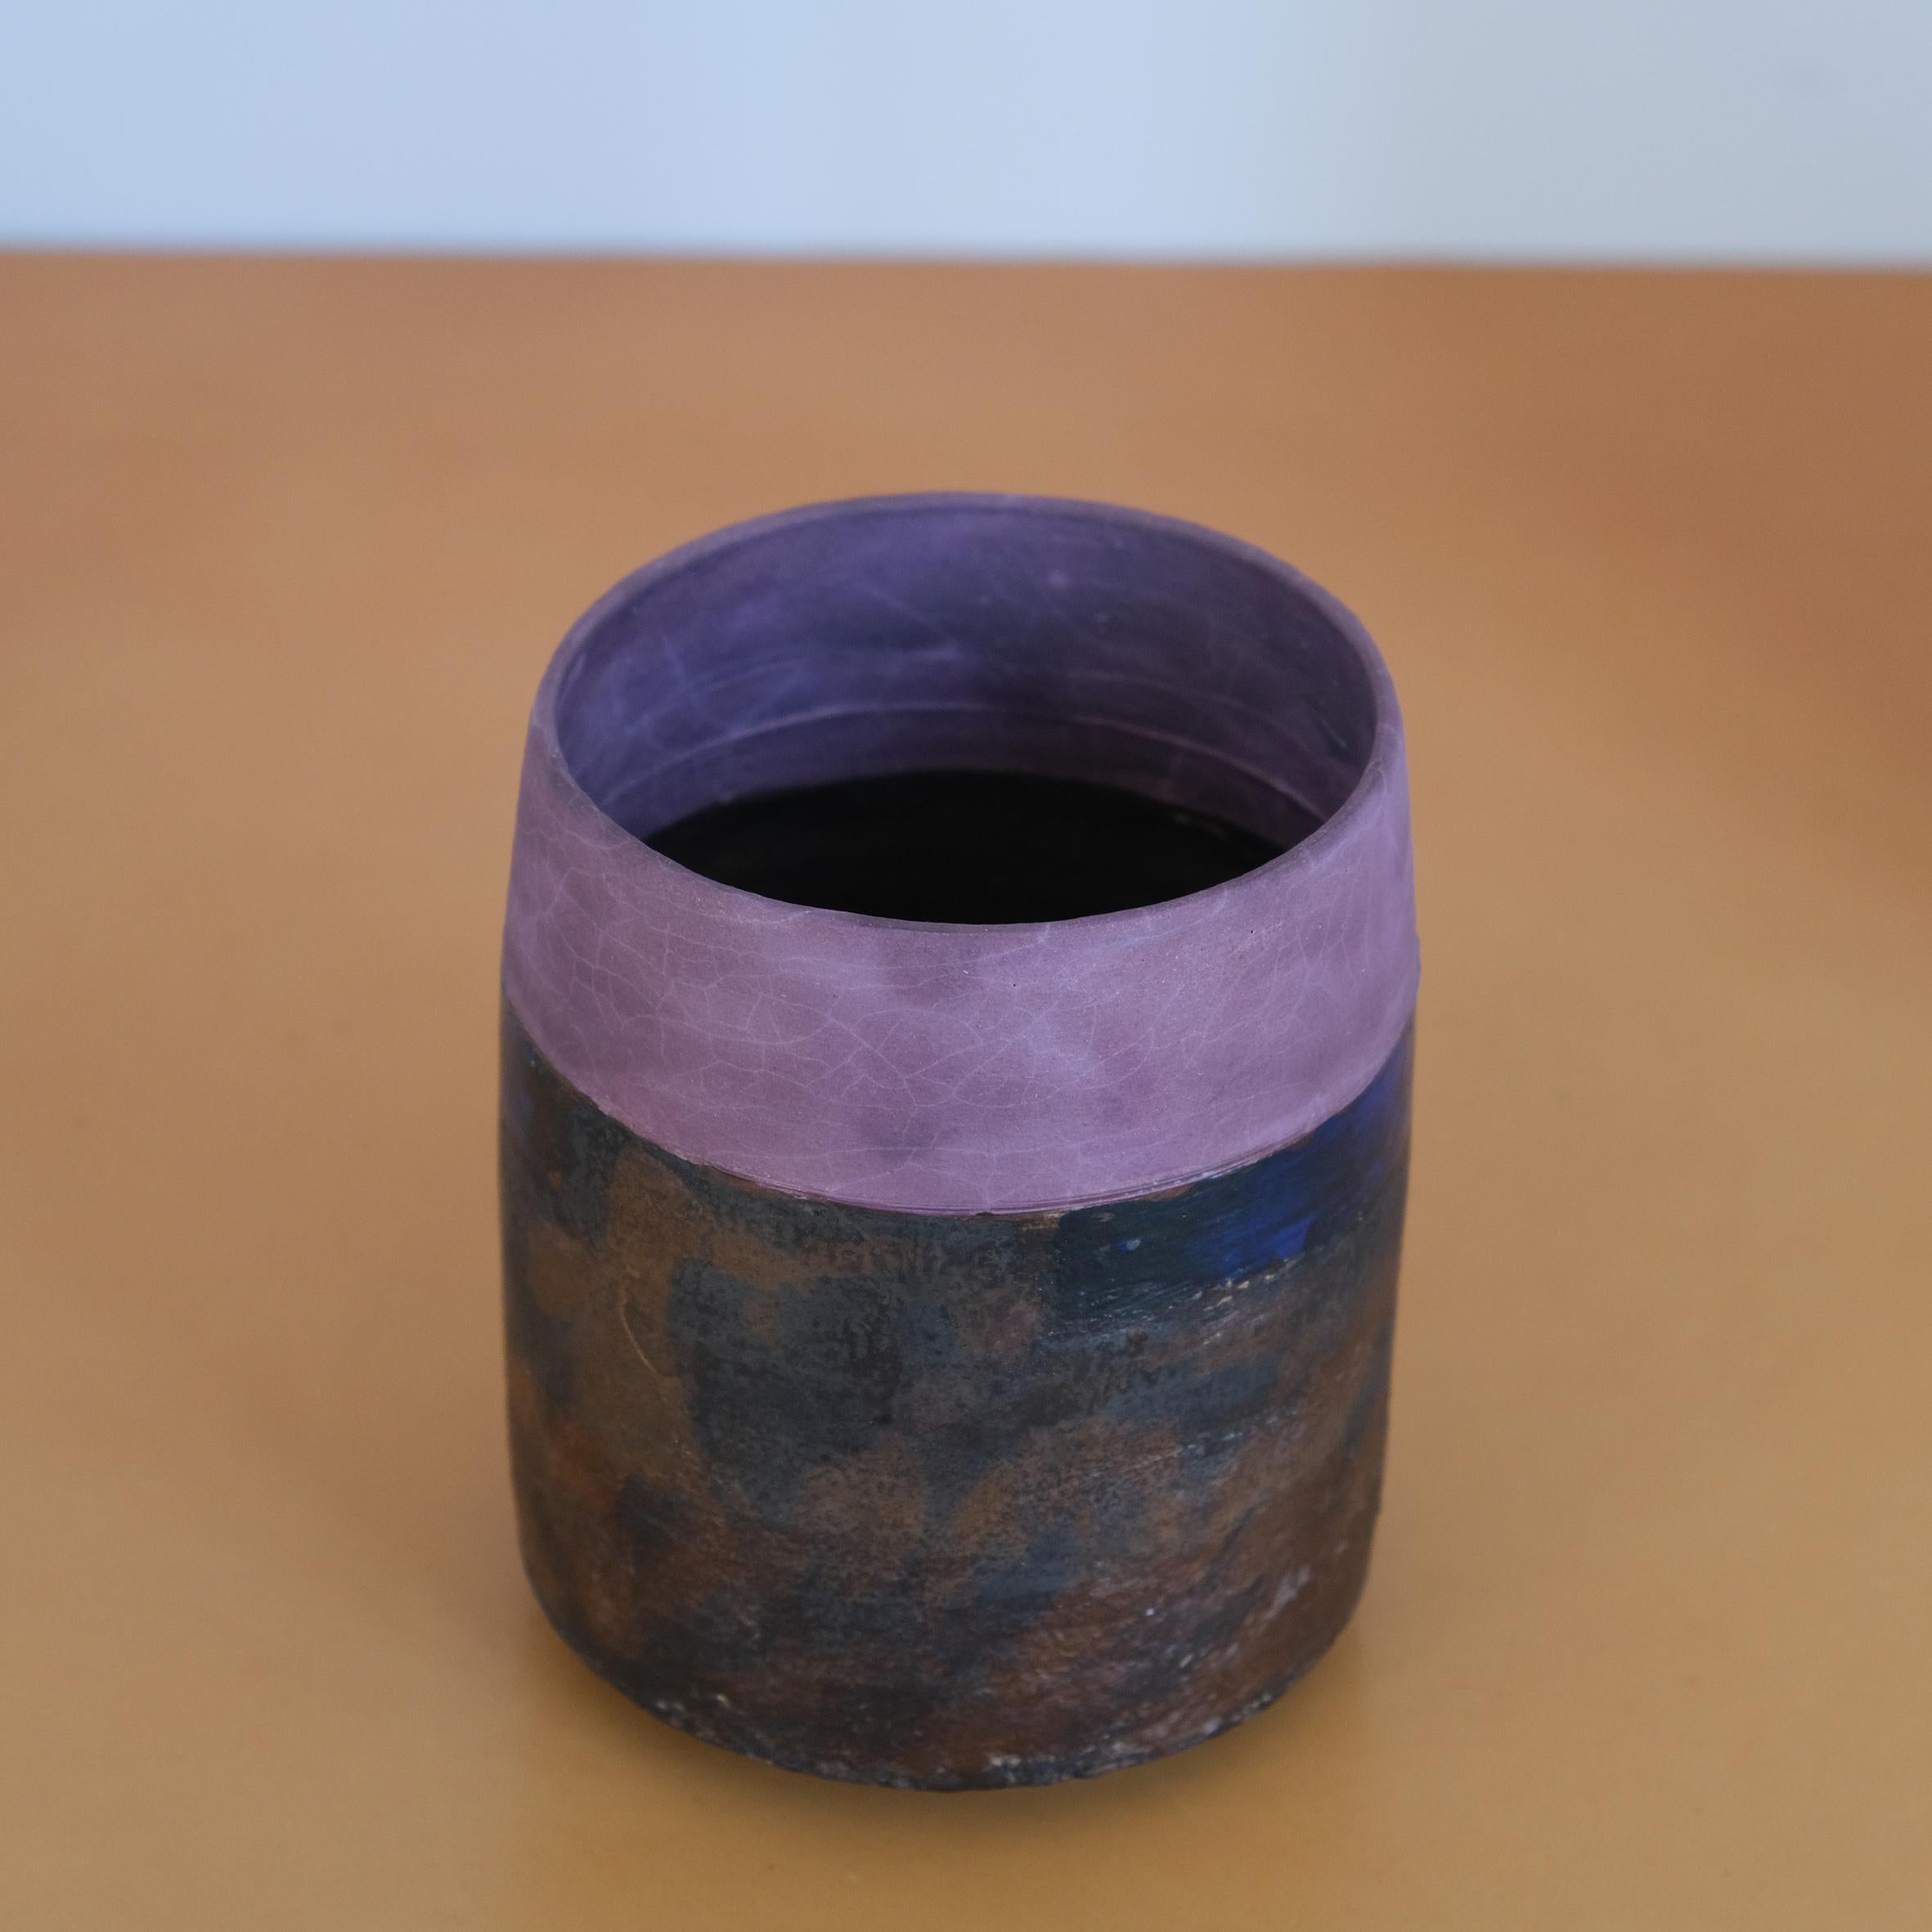 Robin Welch

Vase

Zylindrische Keramikvase, der obere Teil mit einem violetten, matten Überzug, der untere Teil mit einem braunen und schwarzen Überzug.
Darunter gestempelt mit den Initialen 